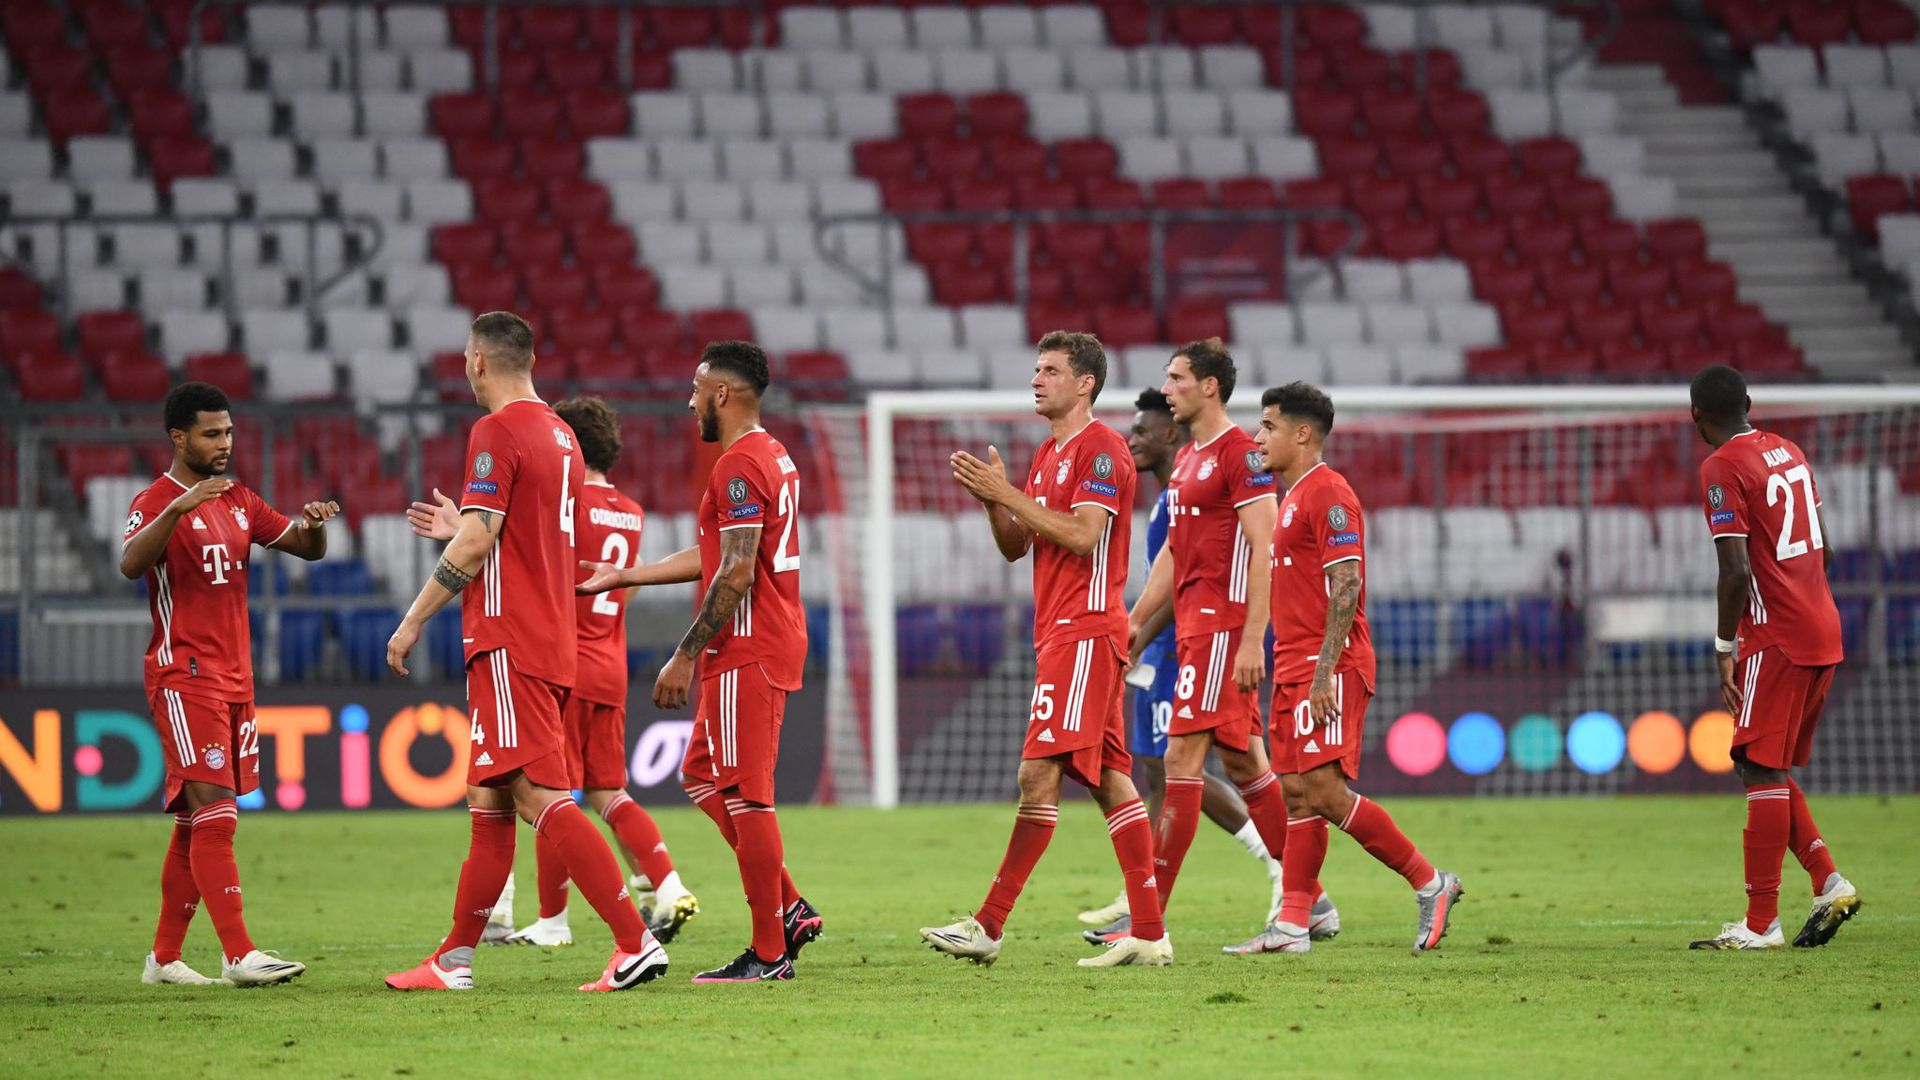 Die Spieler von Bayern München feiern nach Spielende den Sieg.